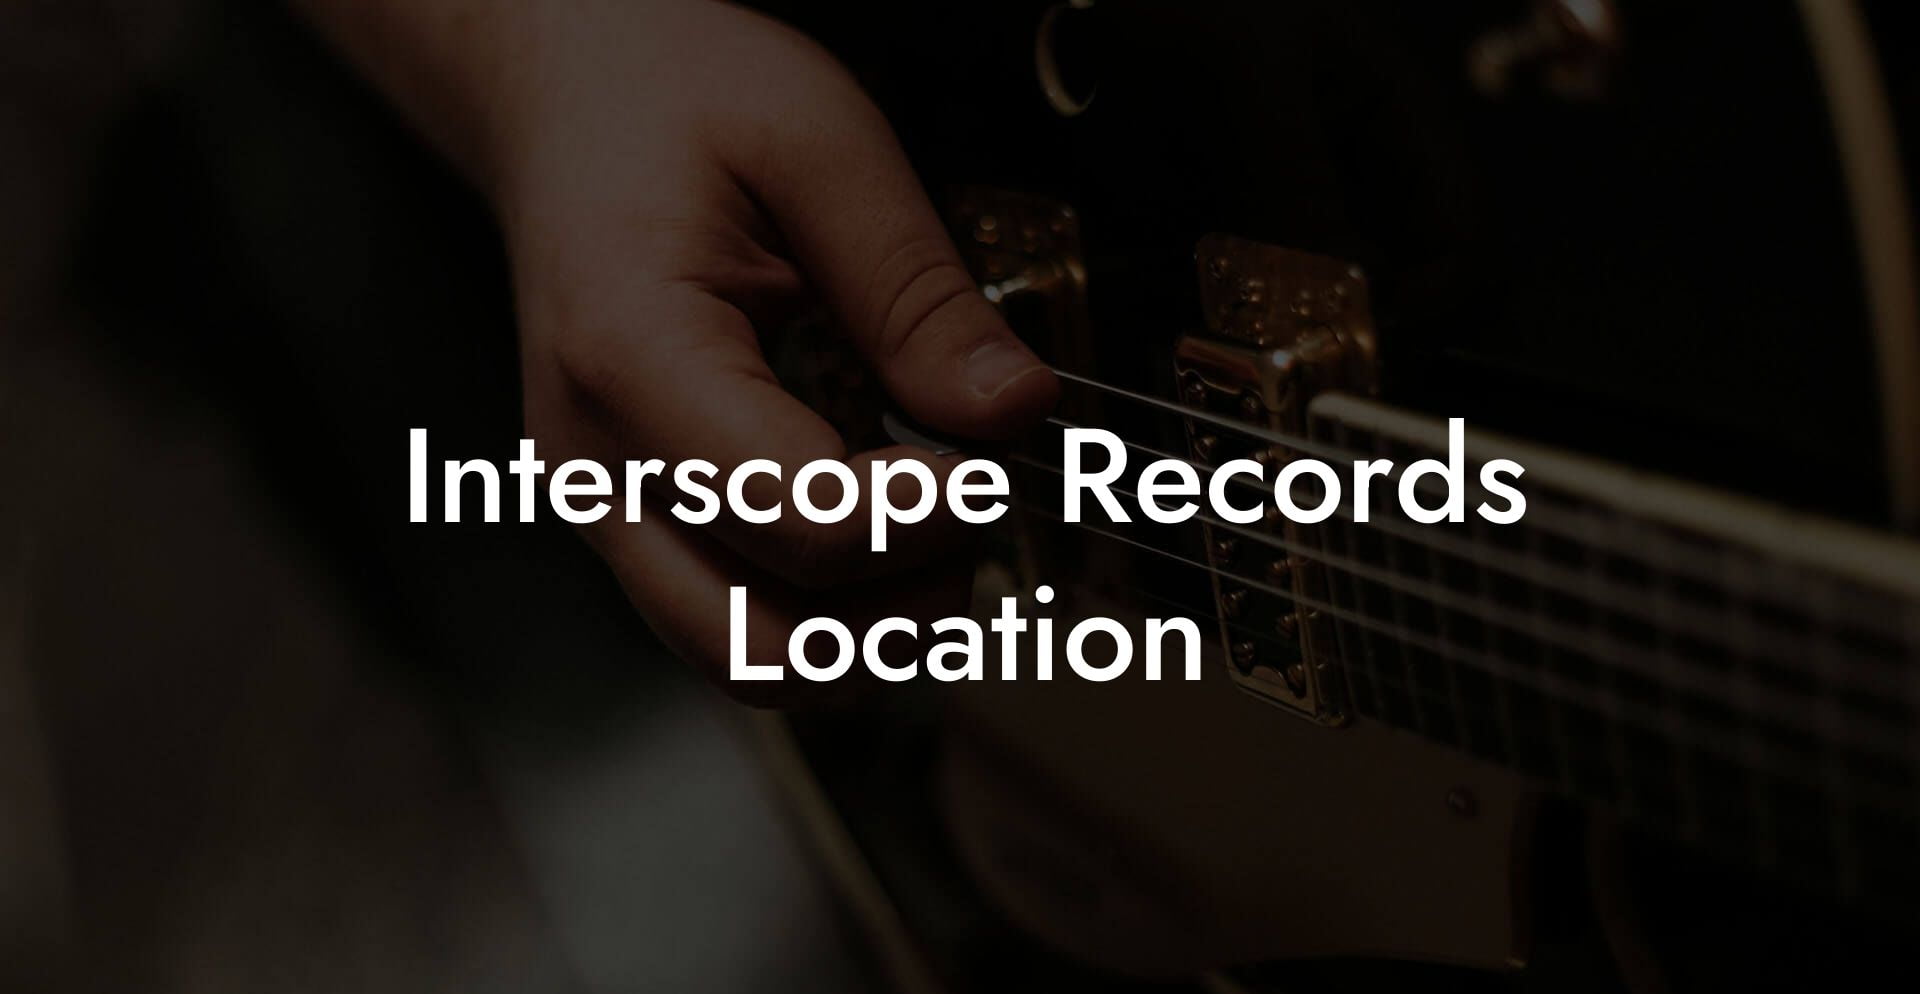 Interscope Records Location